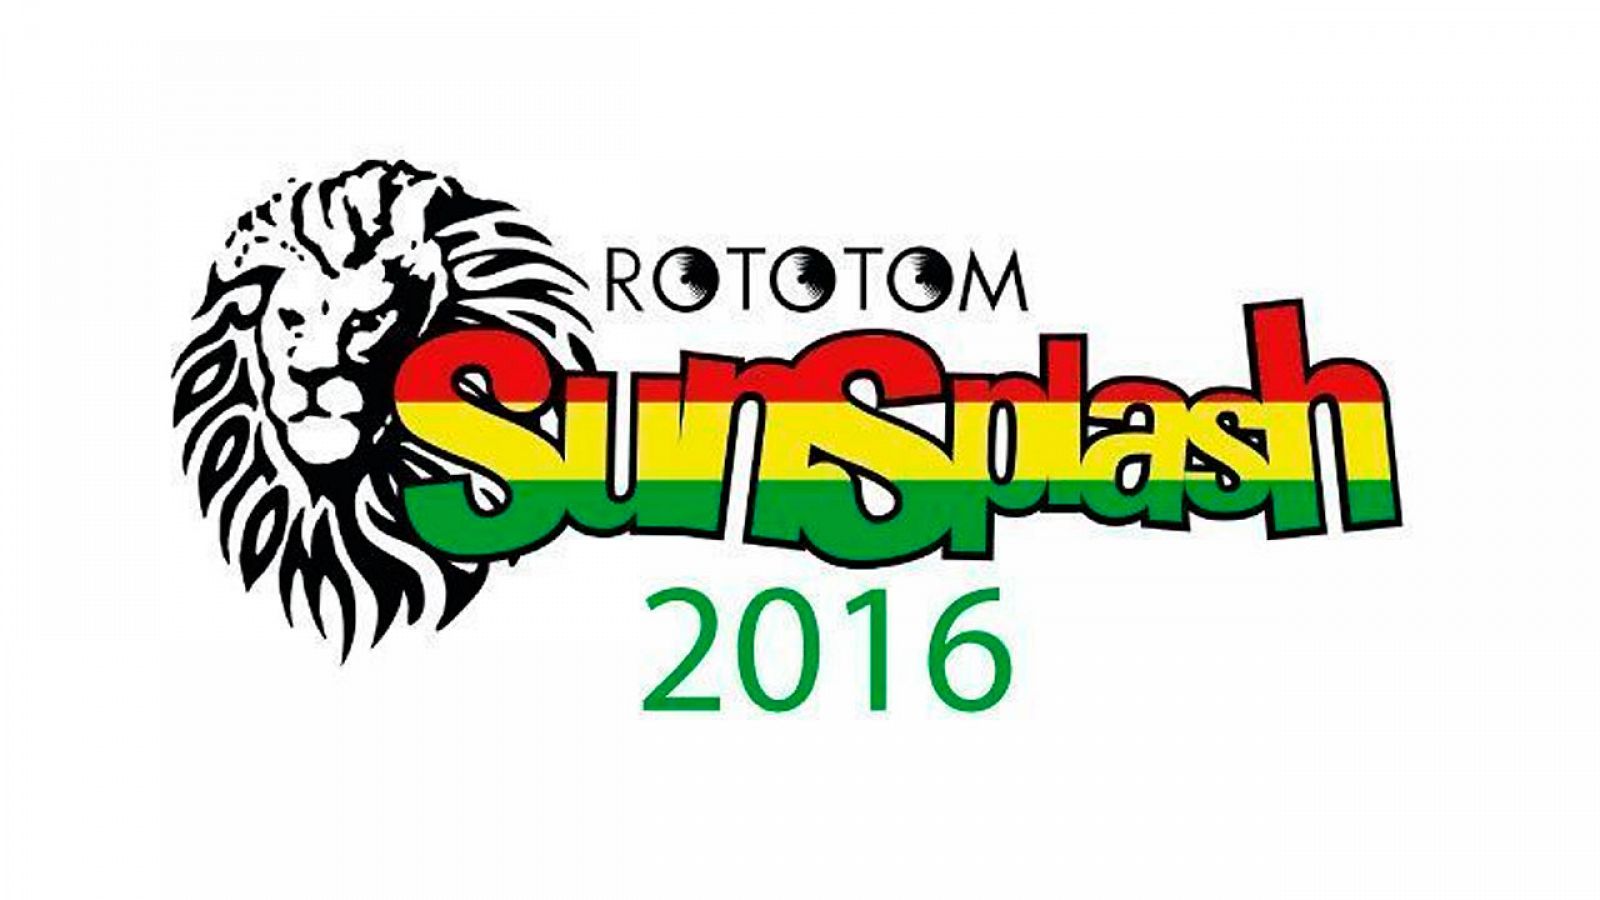 Rototom Sunsplash Reggae Festival 2016